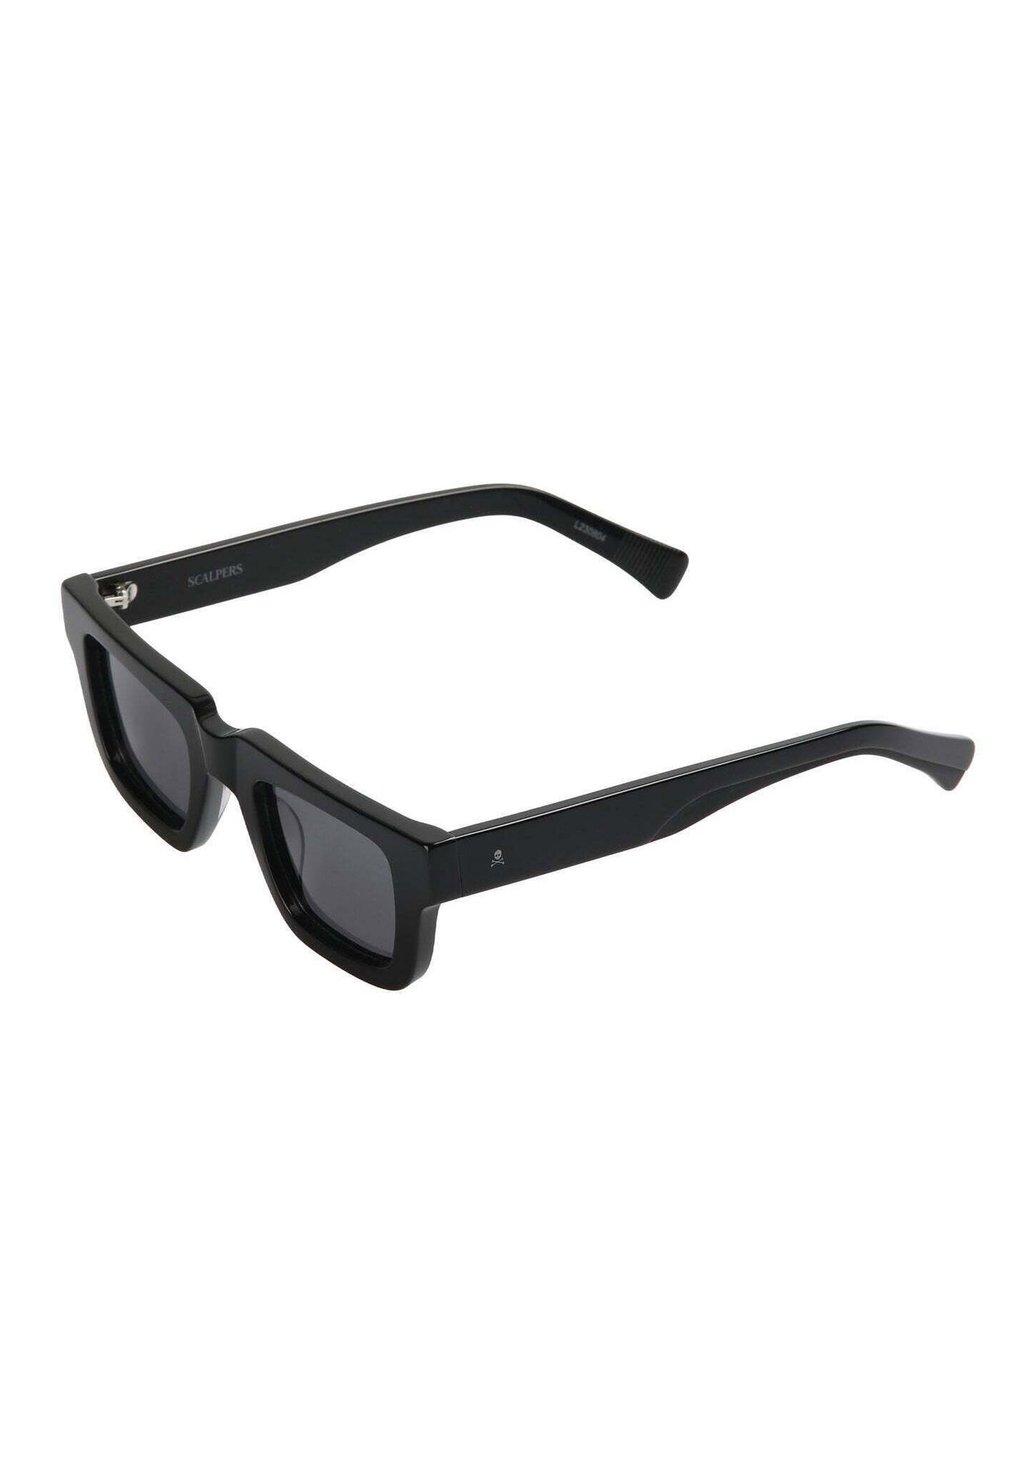 Солнцезащитные очки SUNTA Scalpers, черный